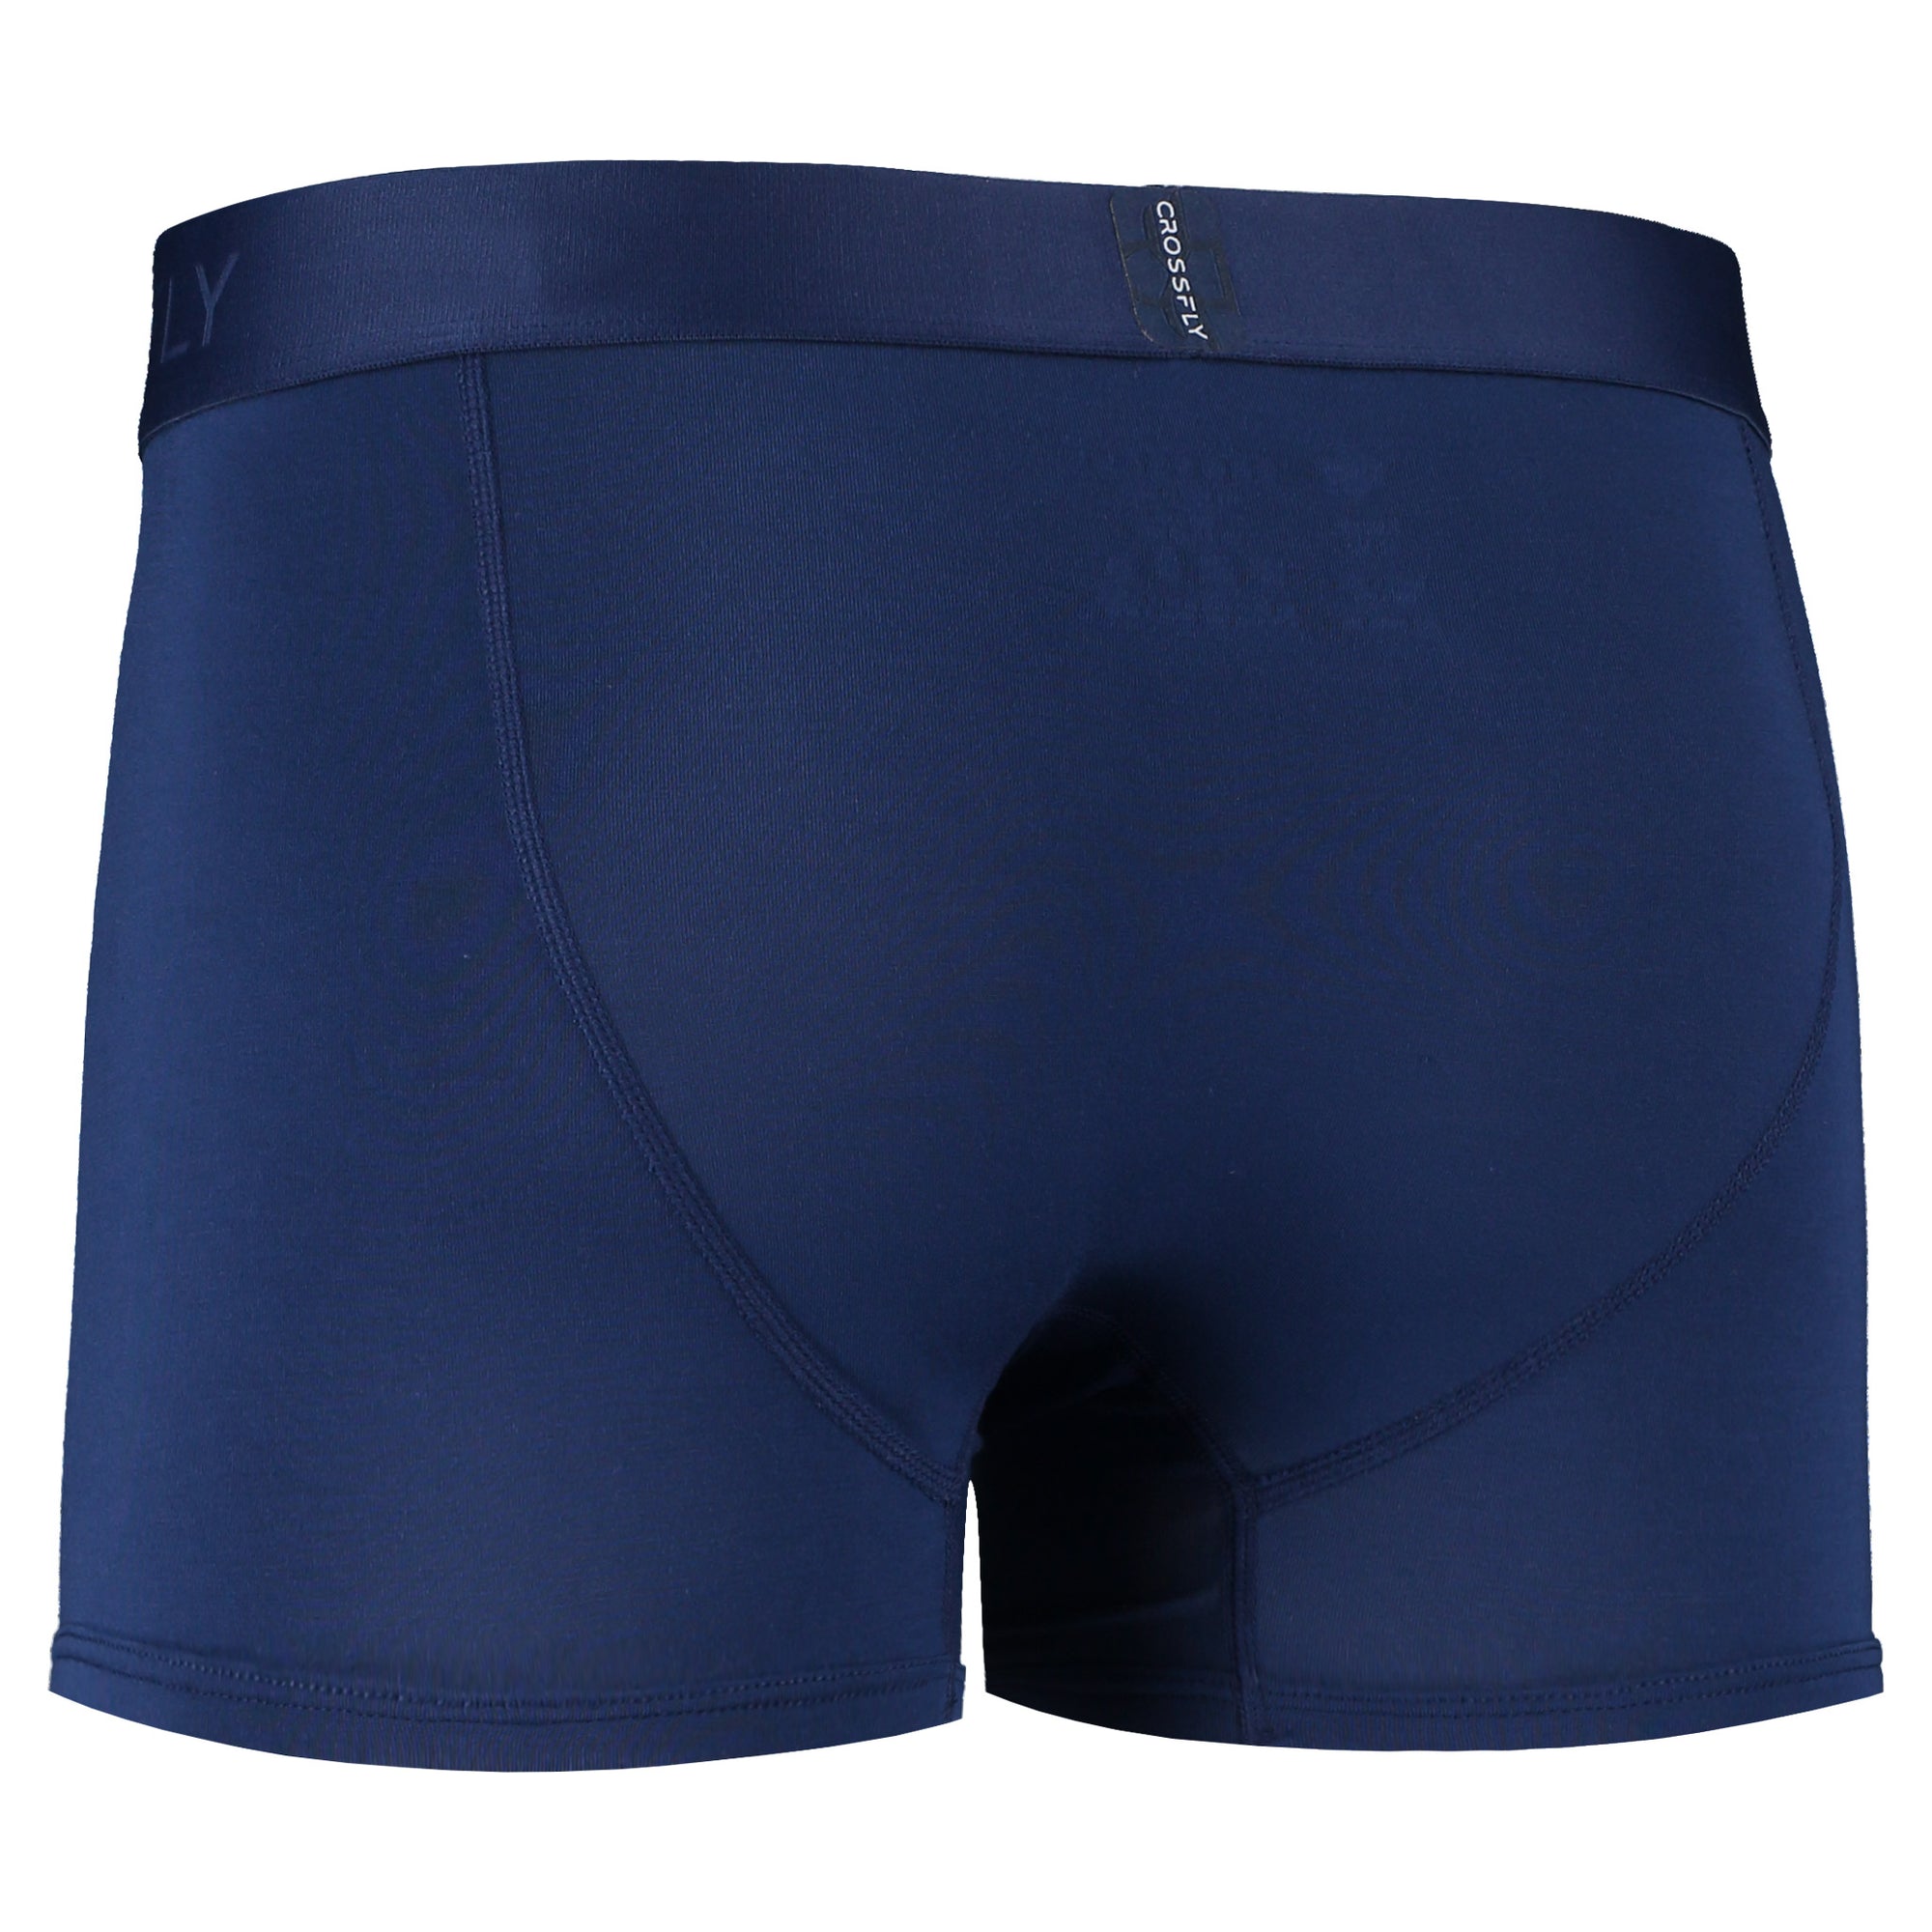  Crossfly IKON X Men's Underwear 6 Trunk Boxer Briefs